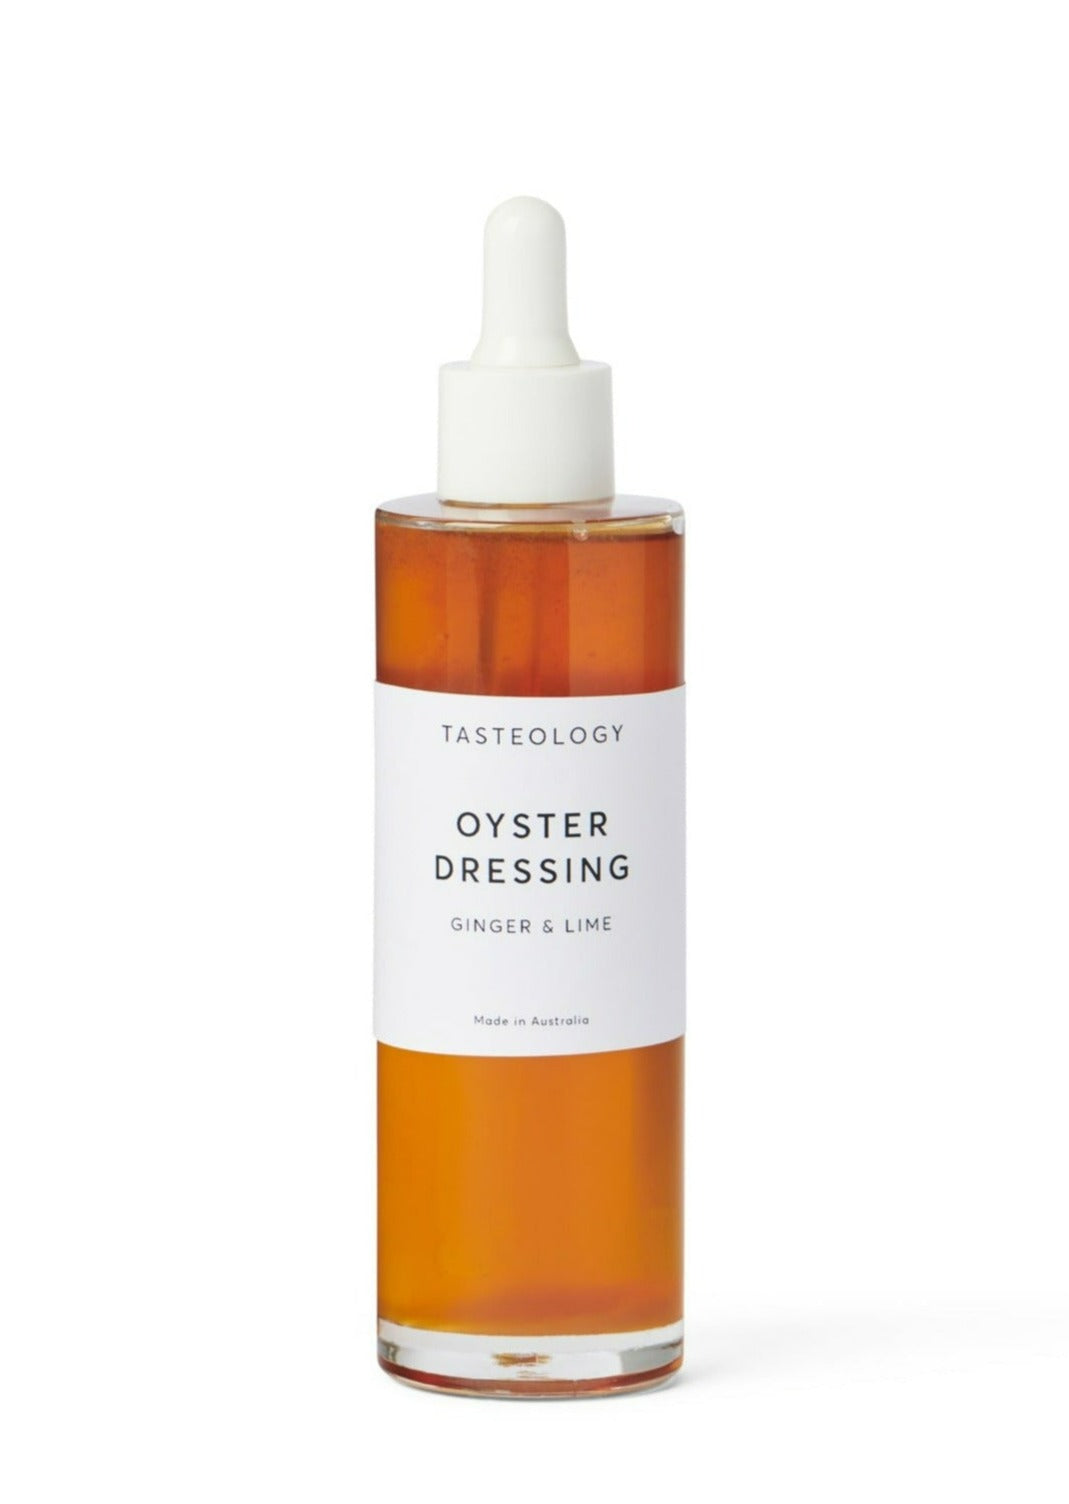 Tasteology Oyster Dressing 100ml - Ginger & Lime